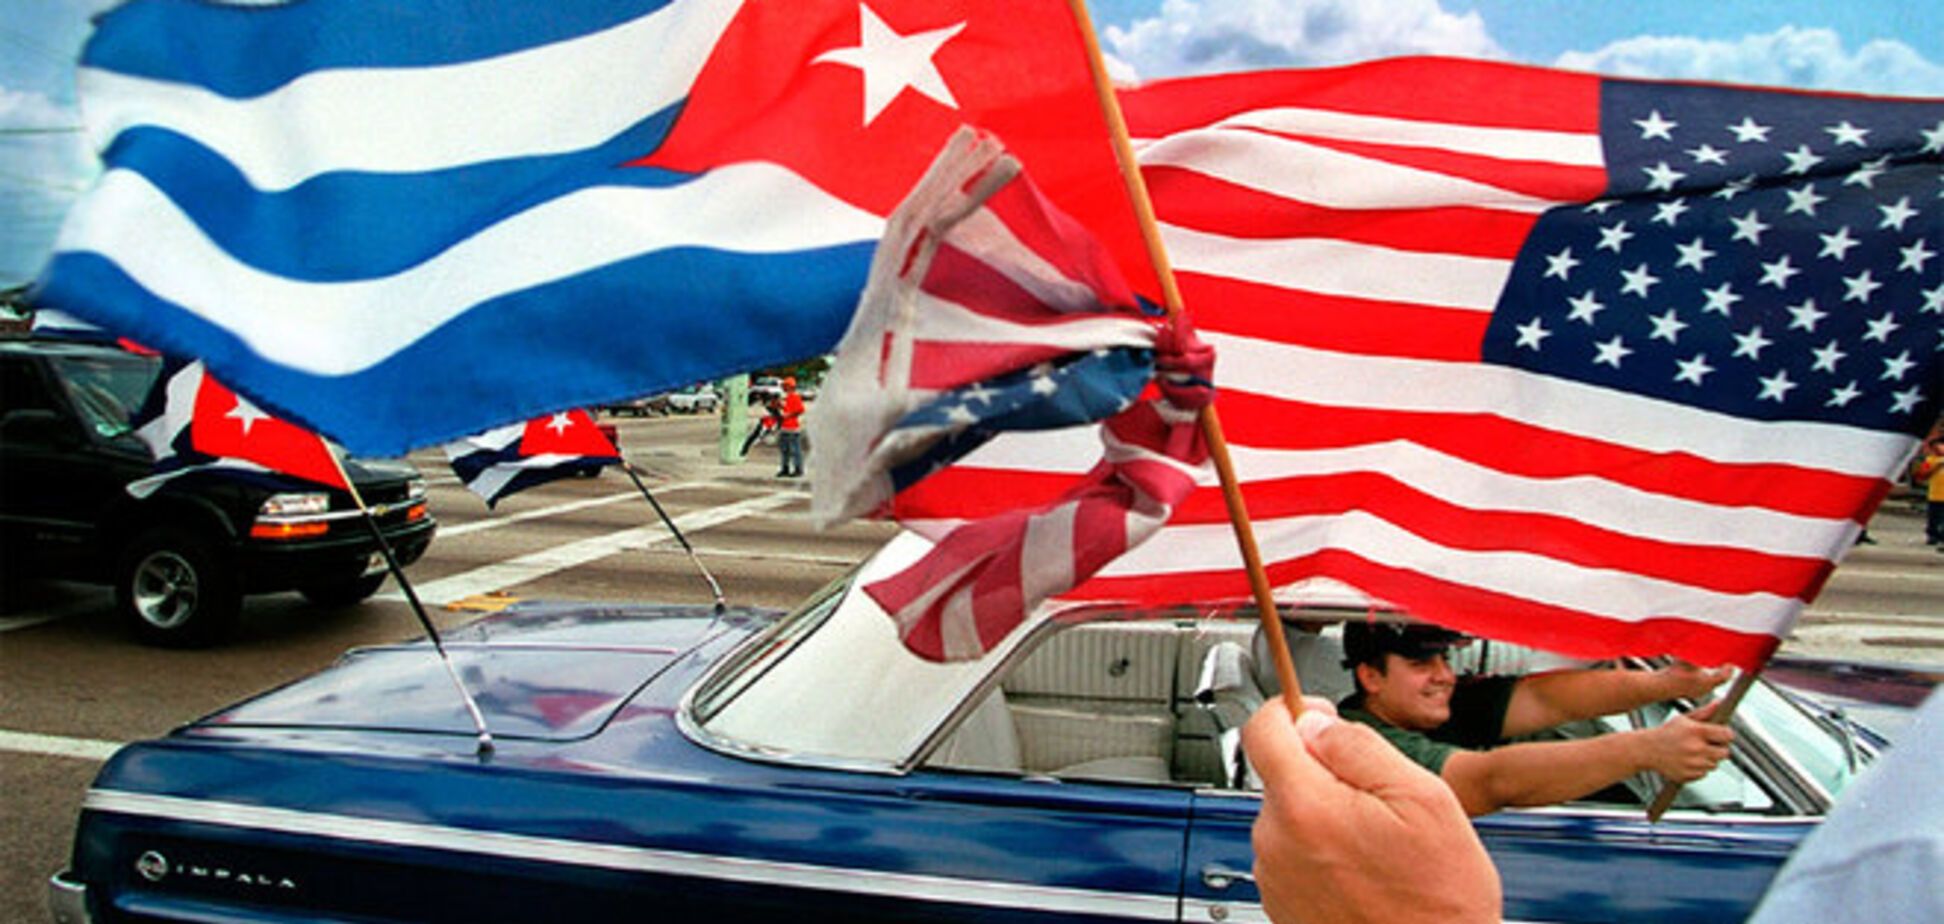 Впервые за 35 лет состоятся американо-кубинские переговоры о налаживании отношений